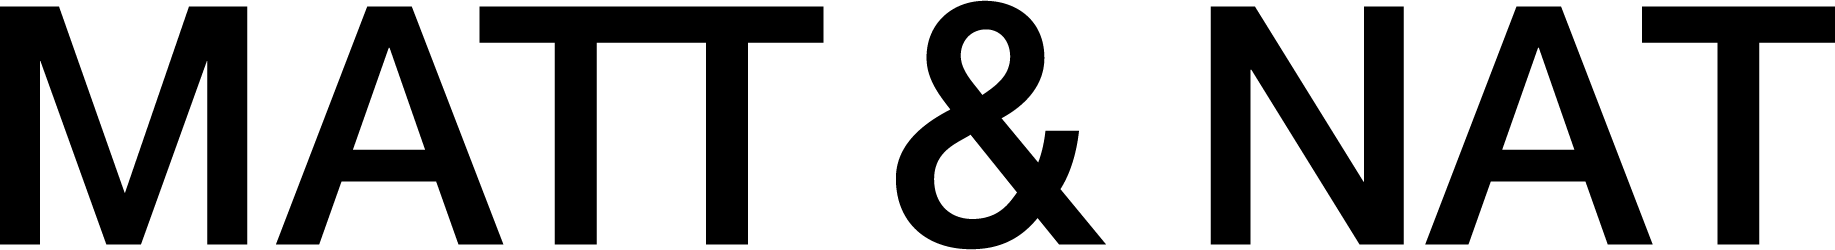 matt & nat-logo